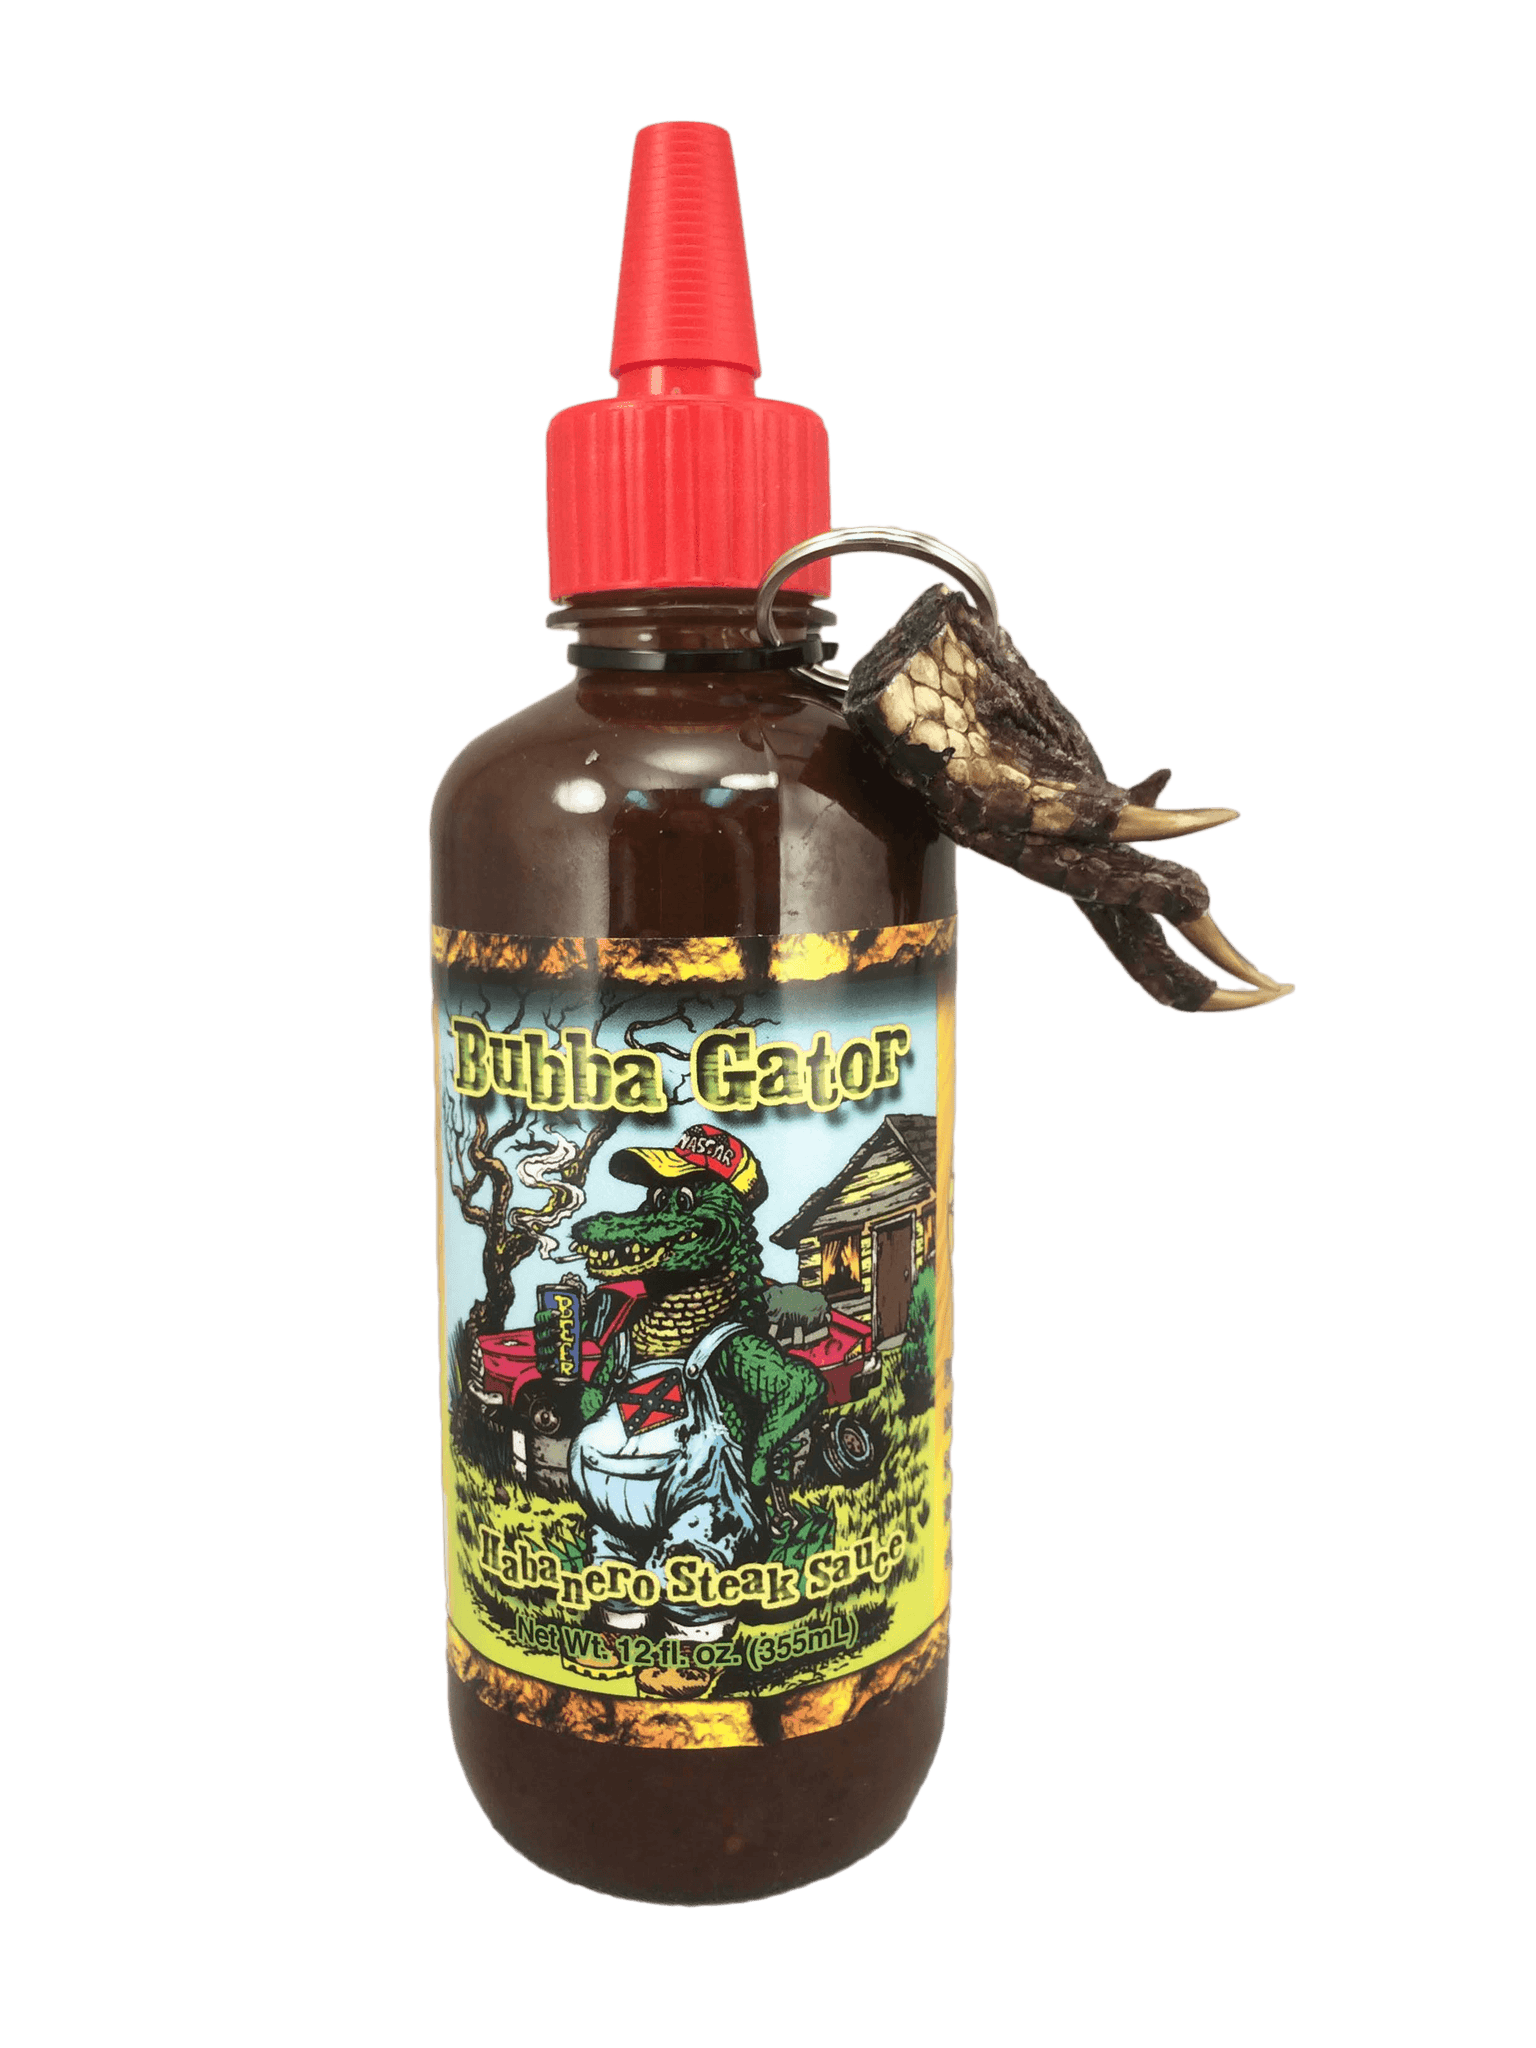 Bubba Gator Hot Sauce